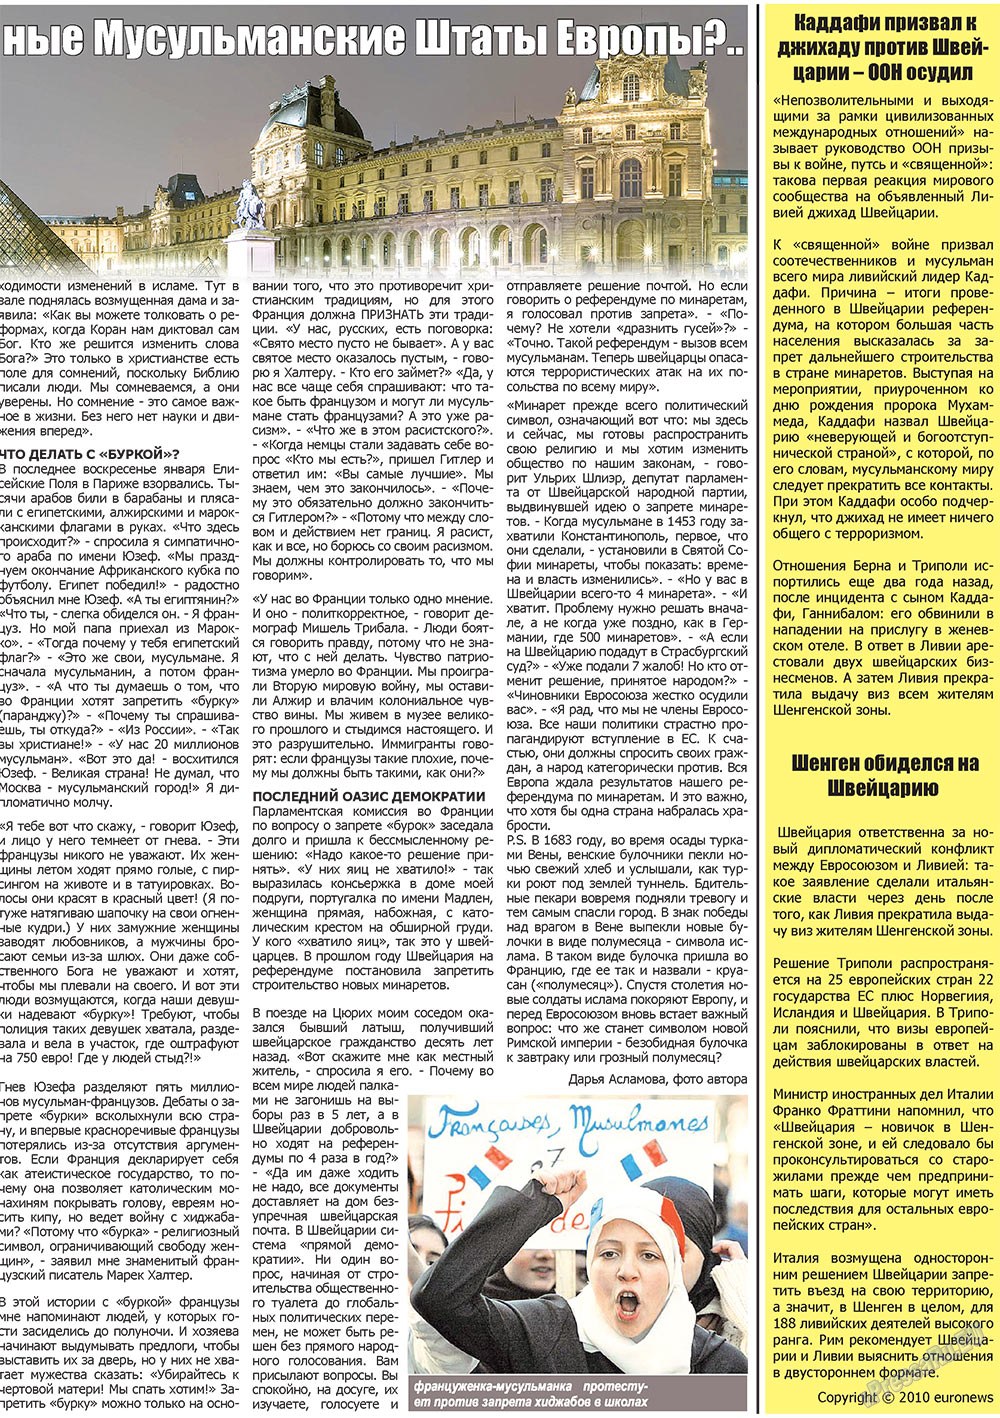 Наше время, газета. 2010 №3 стр.5